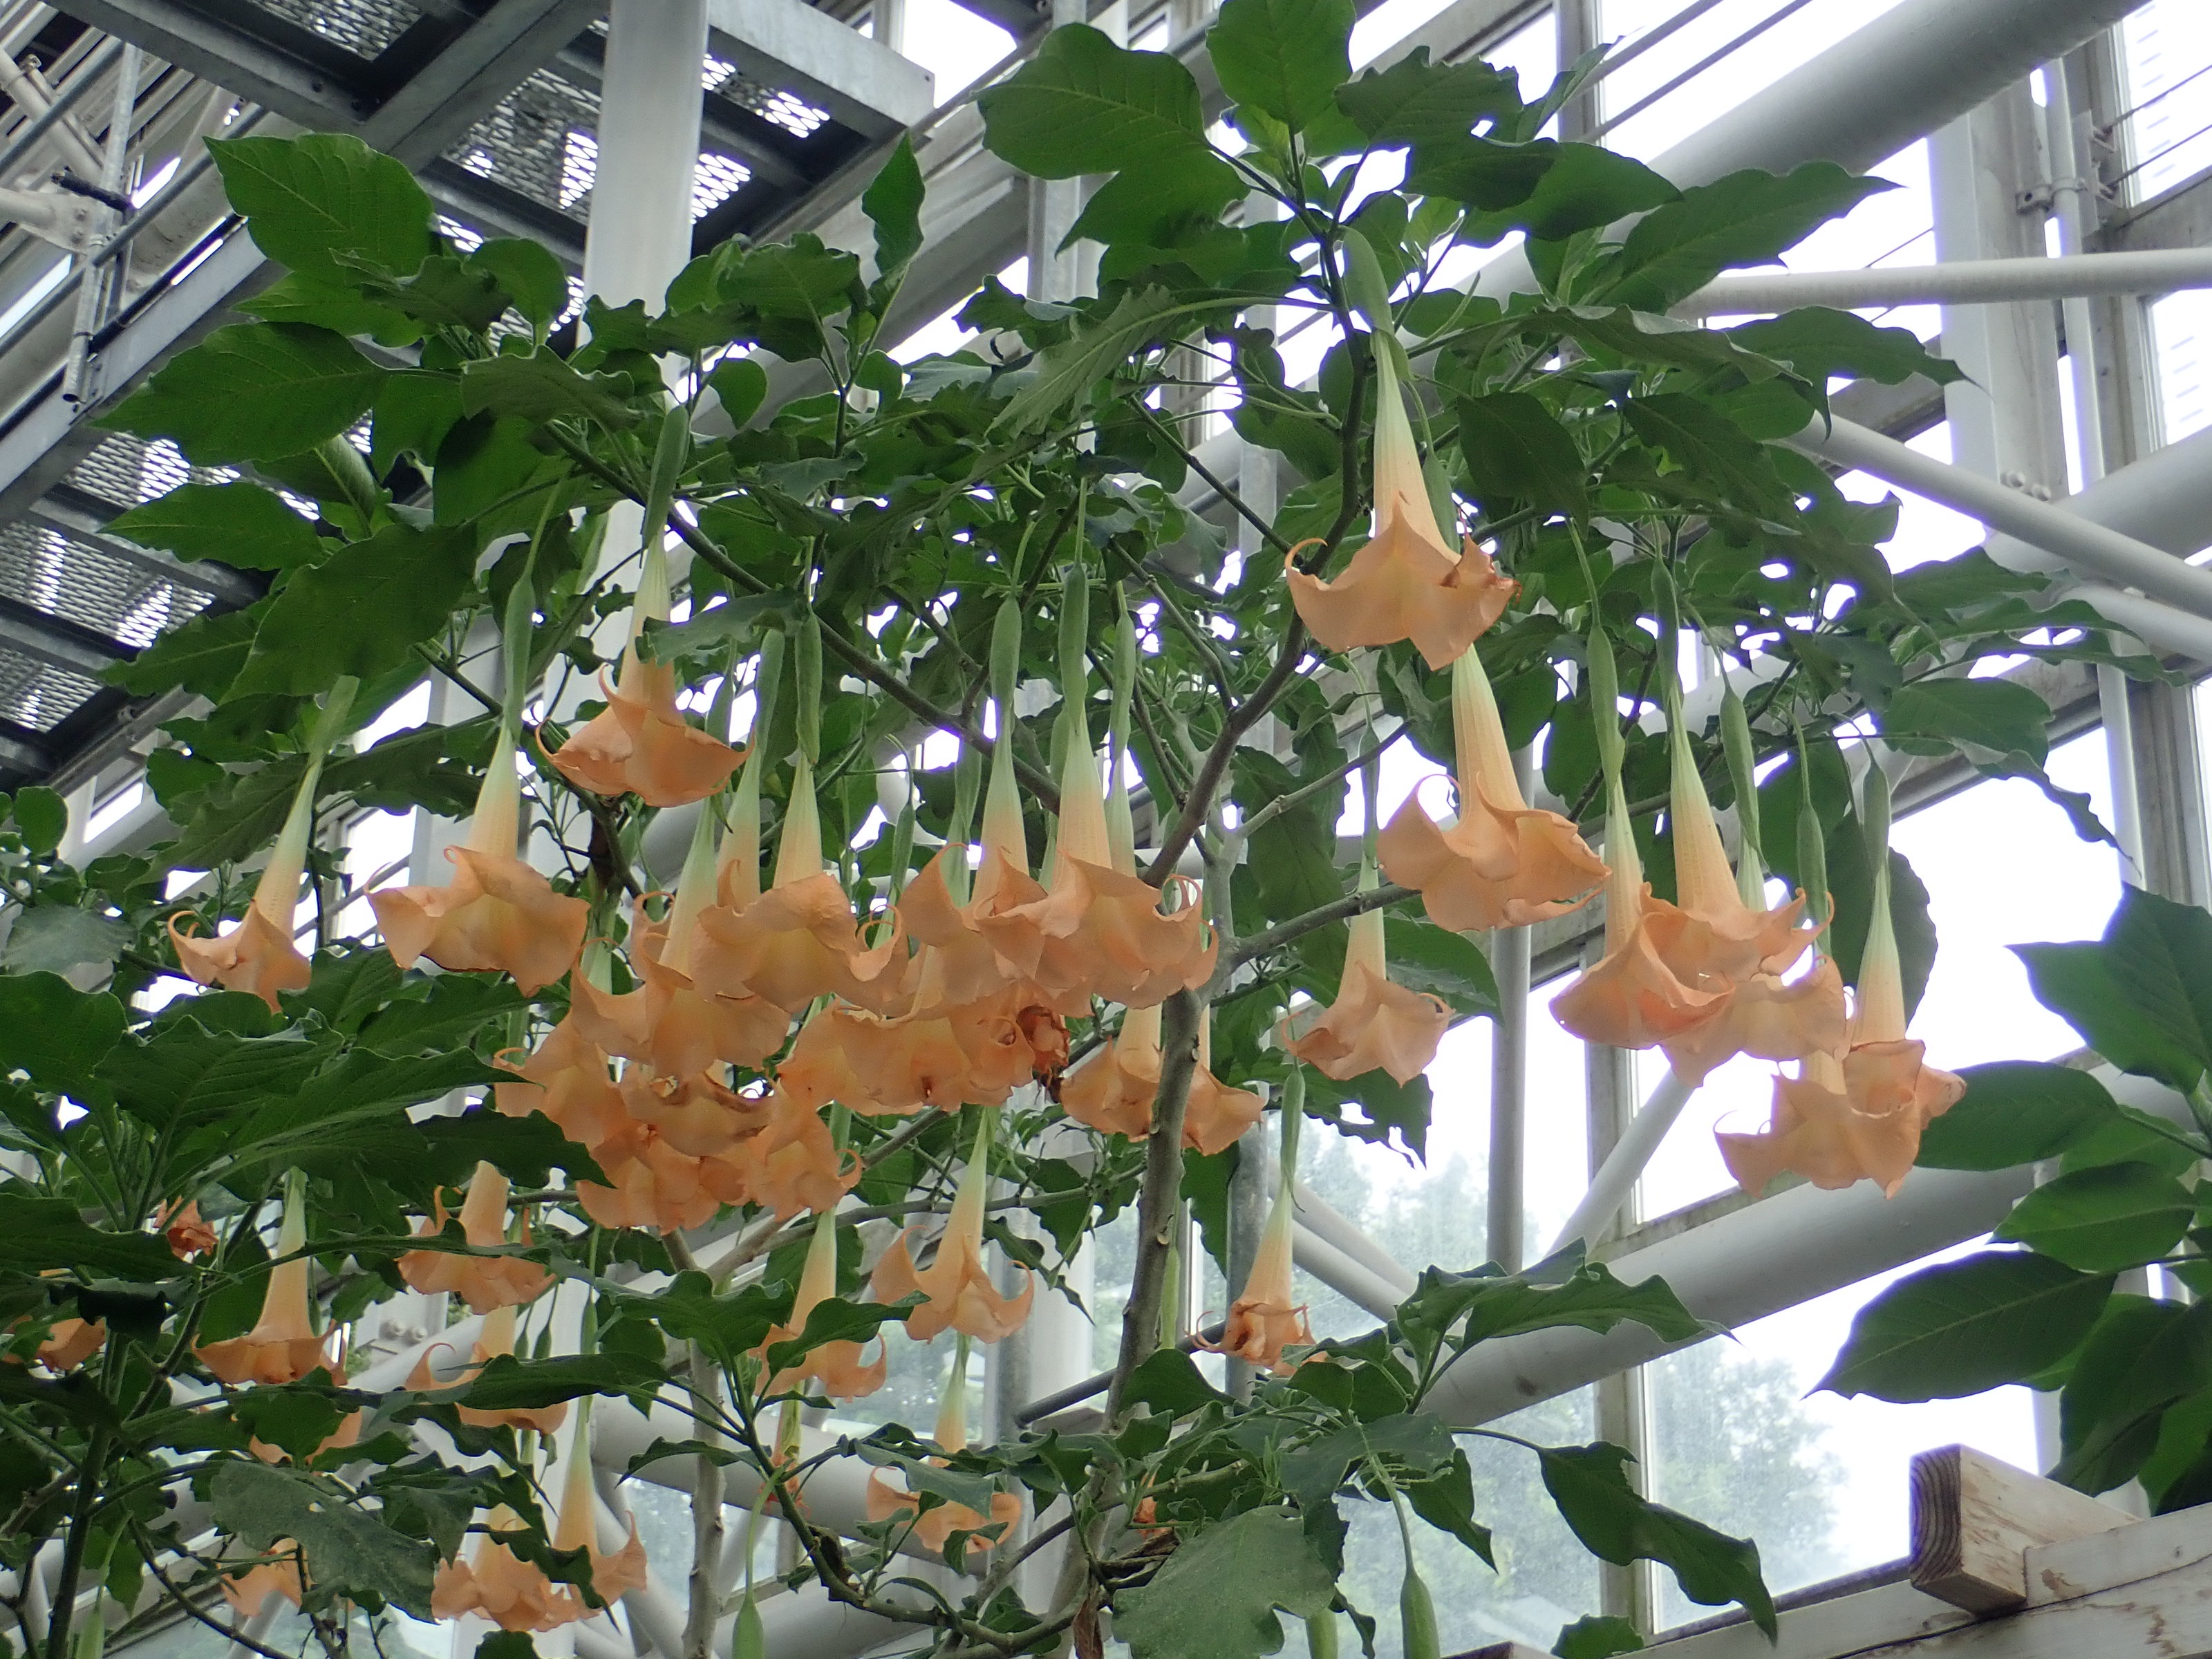 神代植物公園 ニュース スタッフより 園芸係 大温室熱帯花木室のブルグマンシア ヴェルシコロルの花が見ごろとなっています ブルグマンシア ヴェルシコロルはナス科 キダチチョウセンアサガオ属の植物で南米原産 ヴェルシコロルは 色変わり